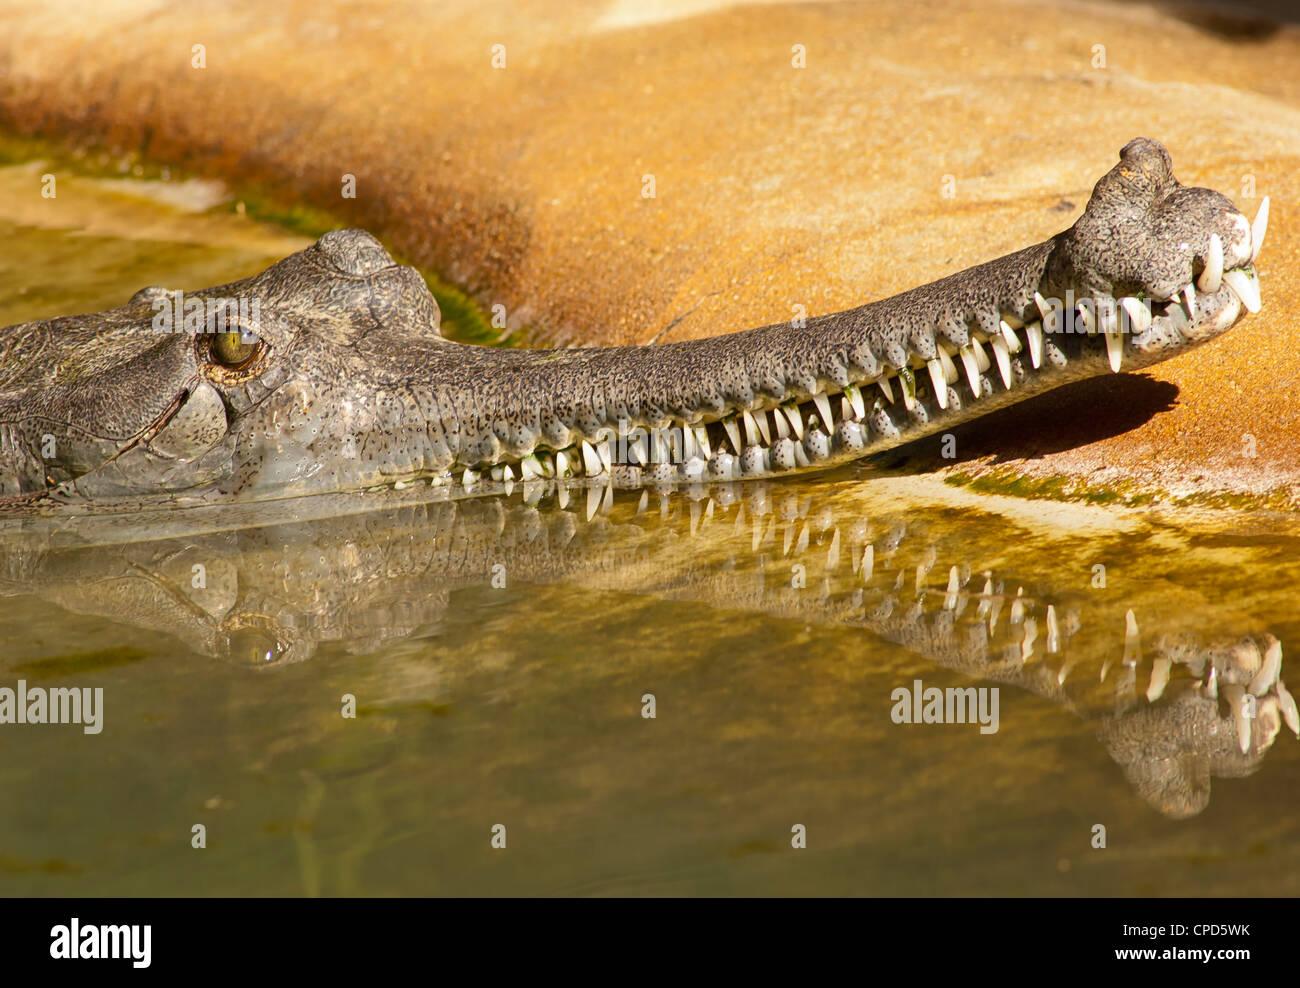 El gavial (Gavialis gangeticus) es un cocodrilo de la familia Gavialidae nativa del subcontinente indio. Foto de stock